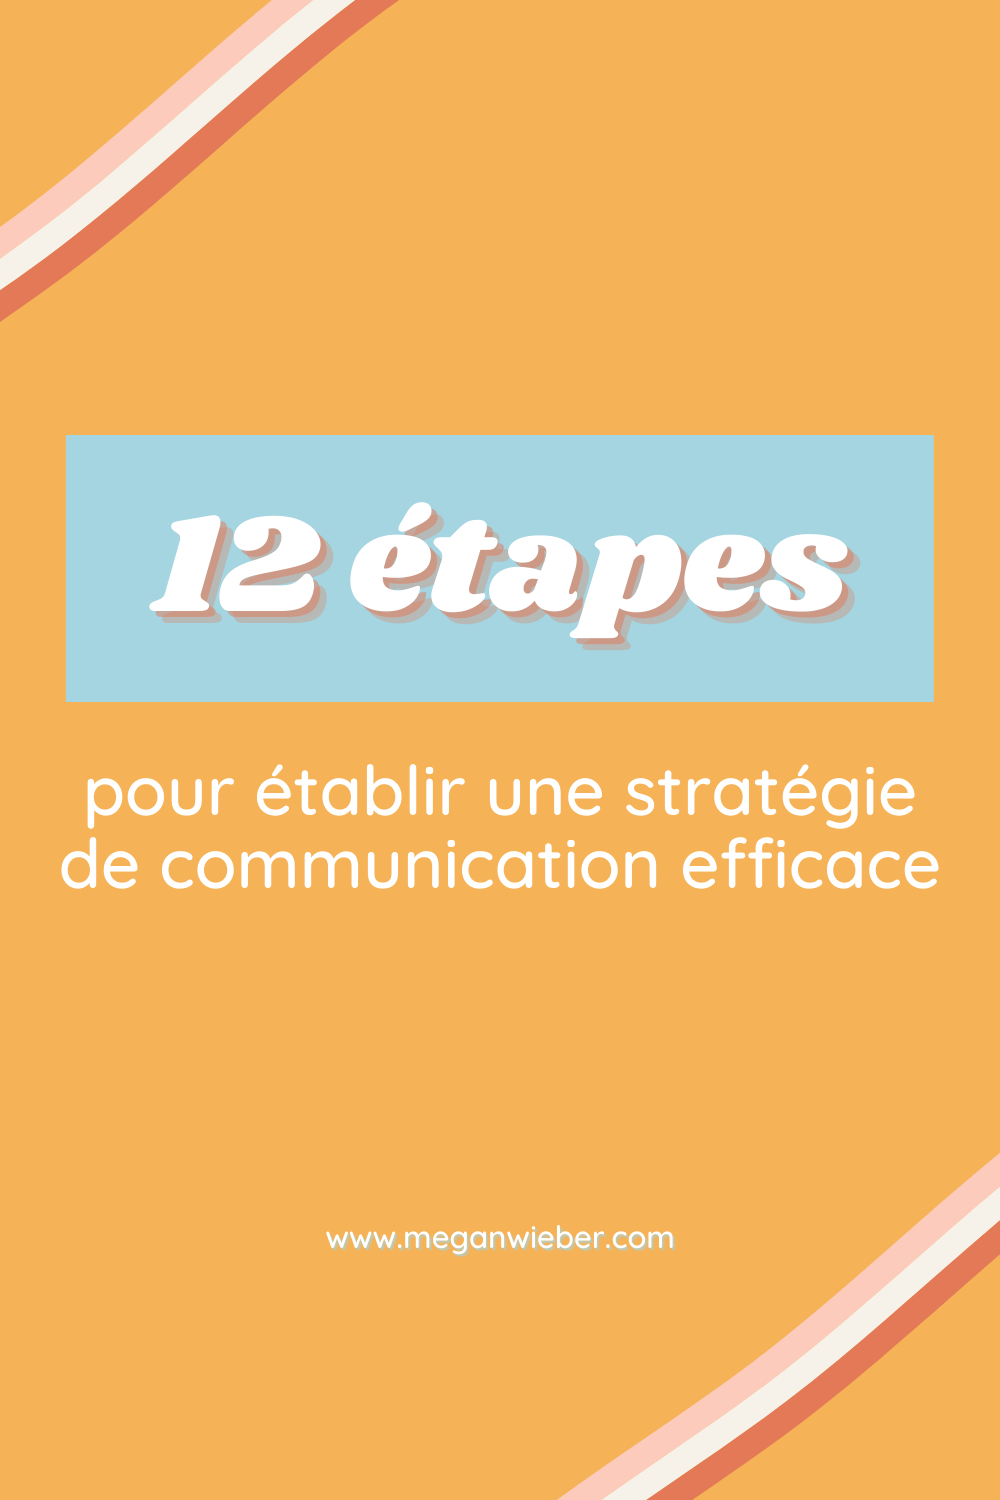 12-etapes-pour-une-strategie-digitale-efficace